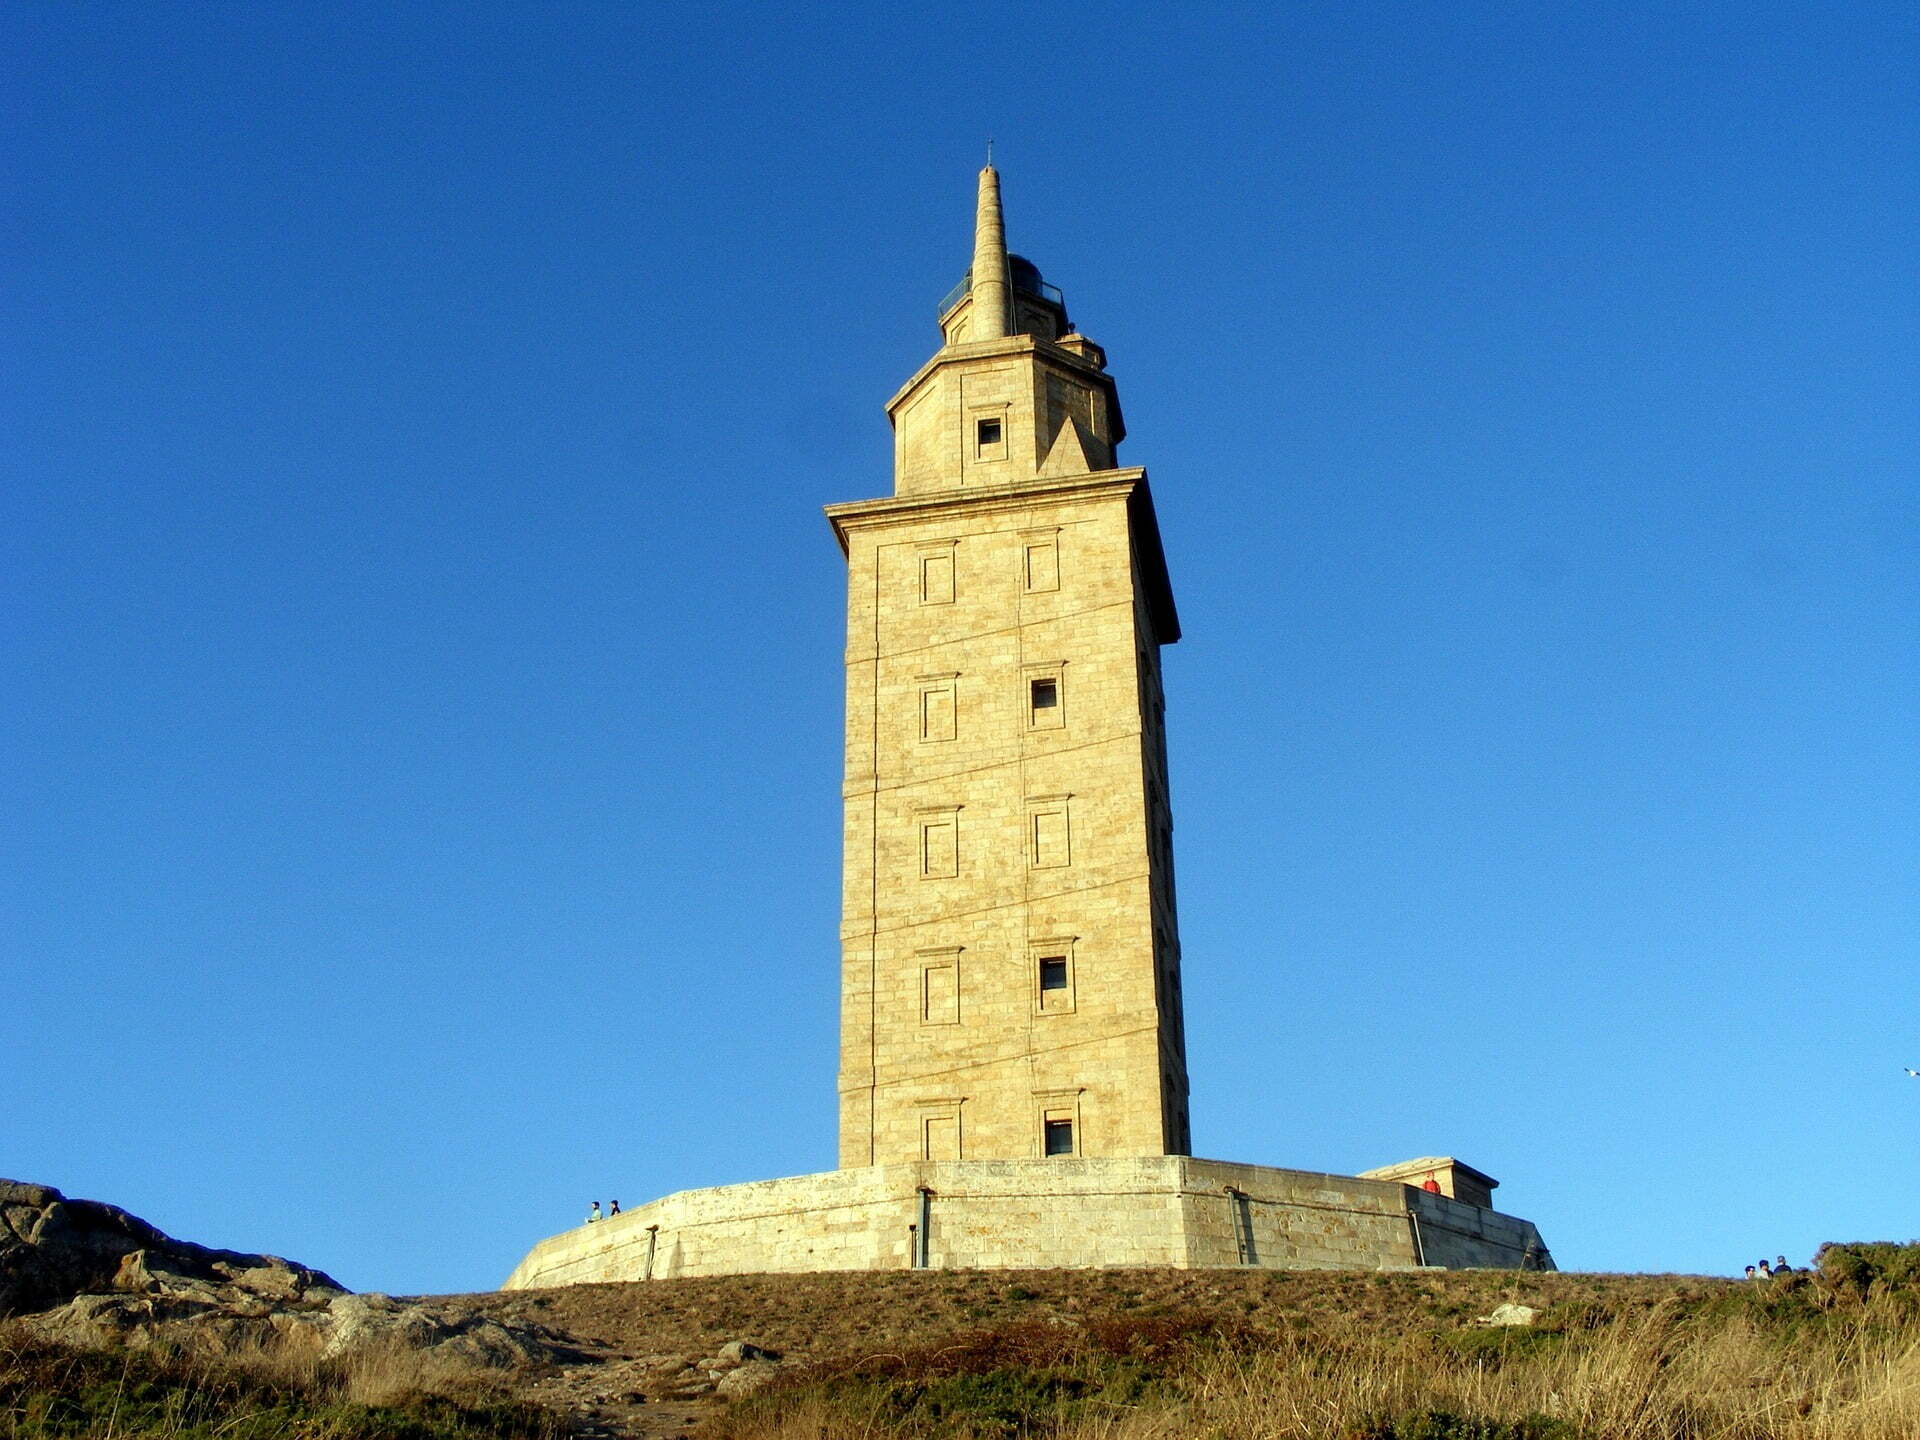 Tower of Hercules